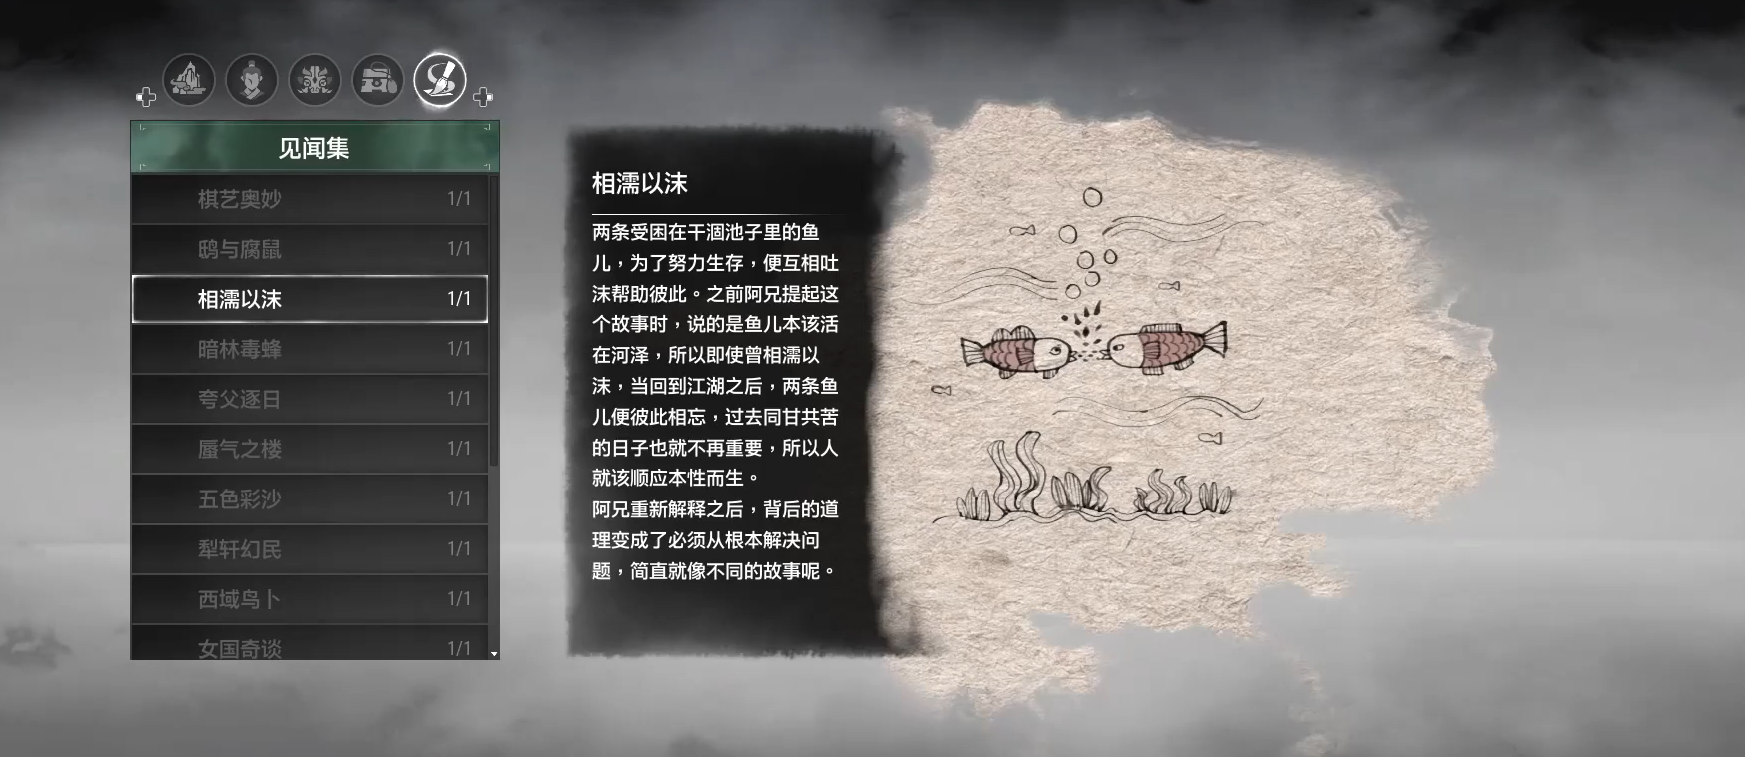 《軒轅劍柒》的事典是由繪畫大師太史湘編寫的